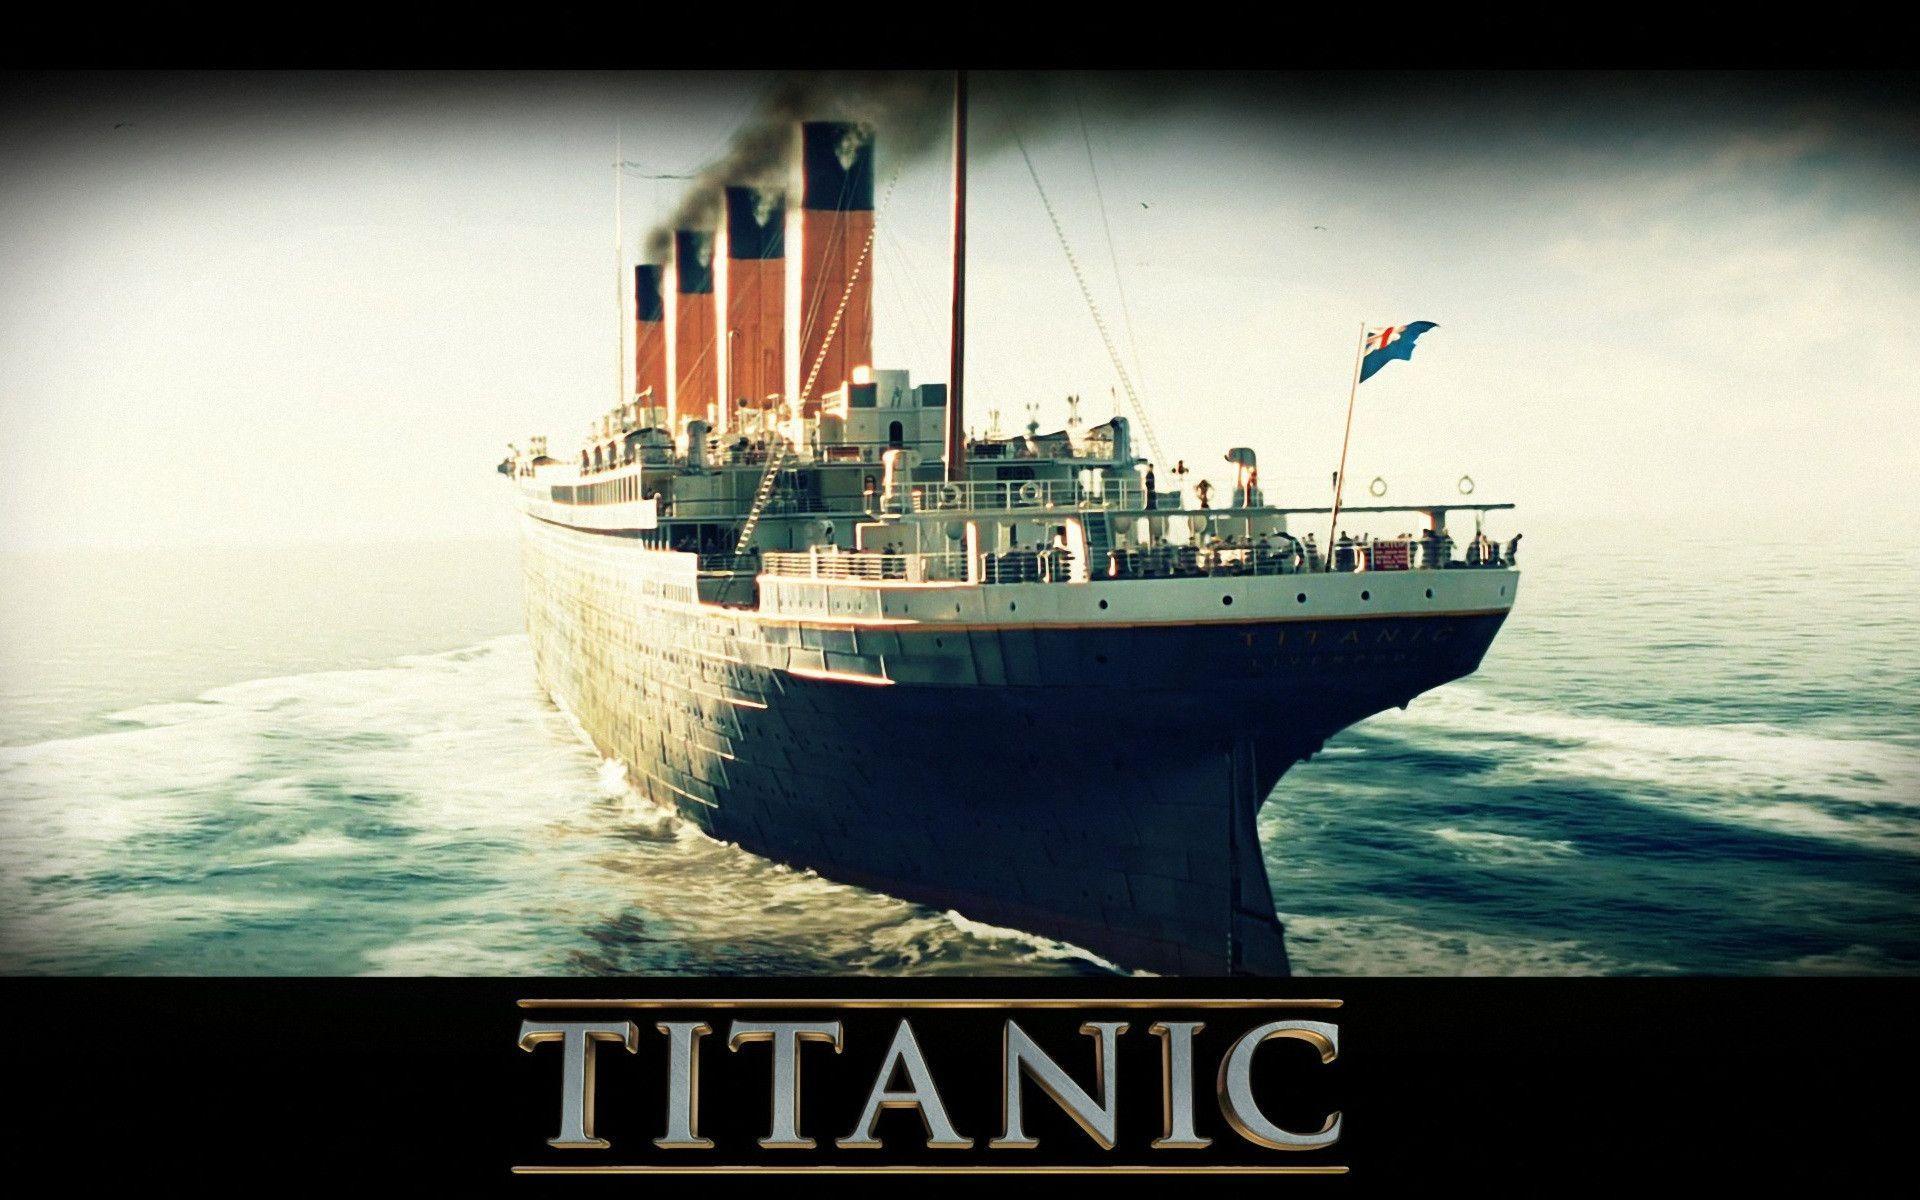 Titanic Ship Wallpapers Wallpaper Cave HD Wallpapers Download Free Images Wallpaper [wallpaper981.blogspot.com]